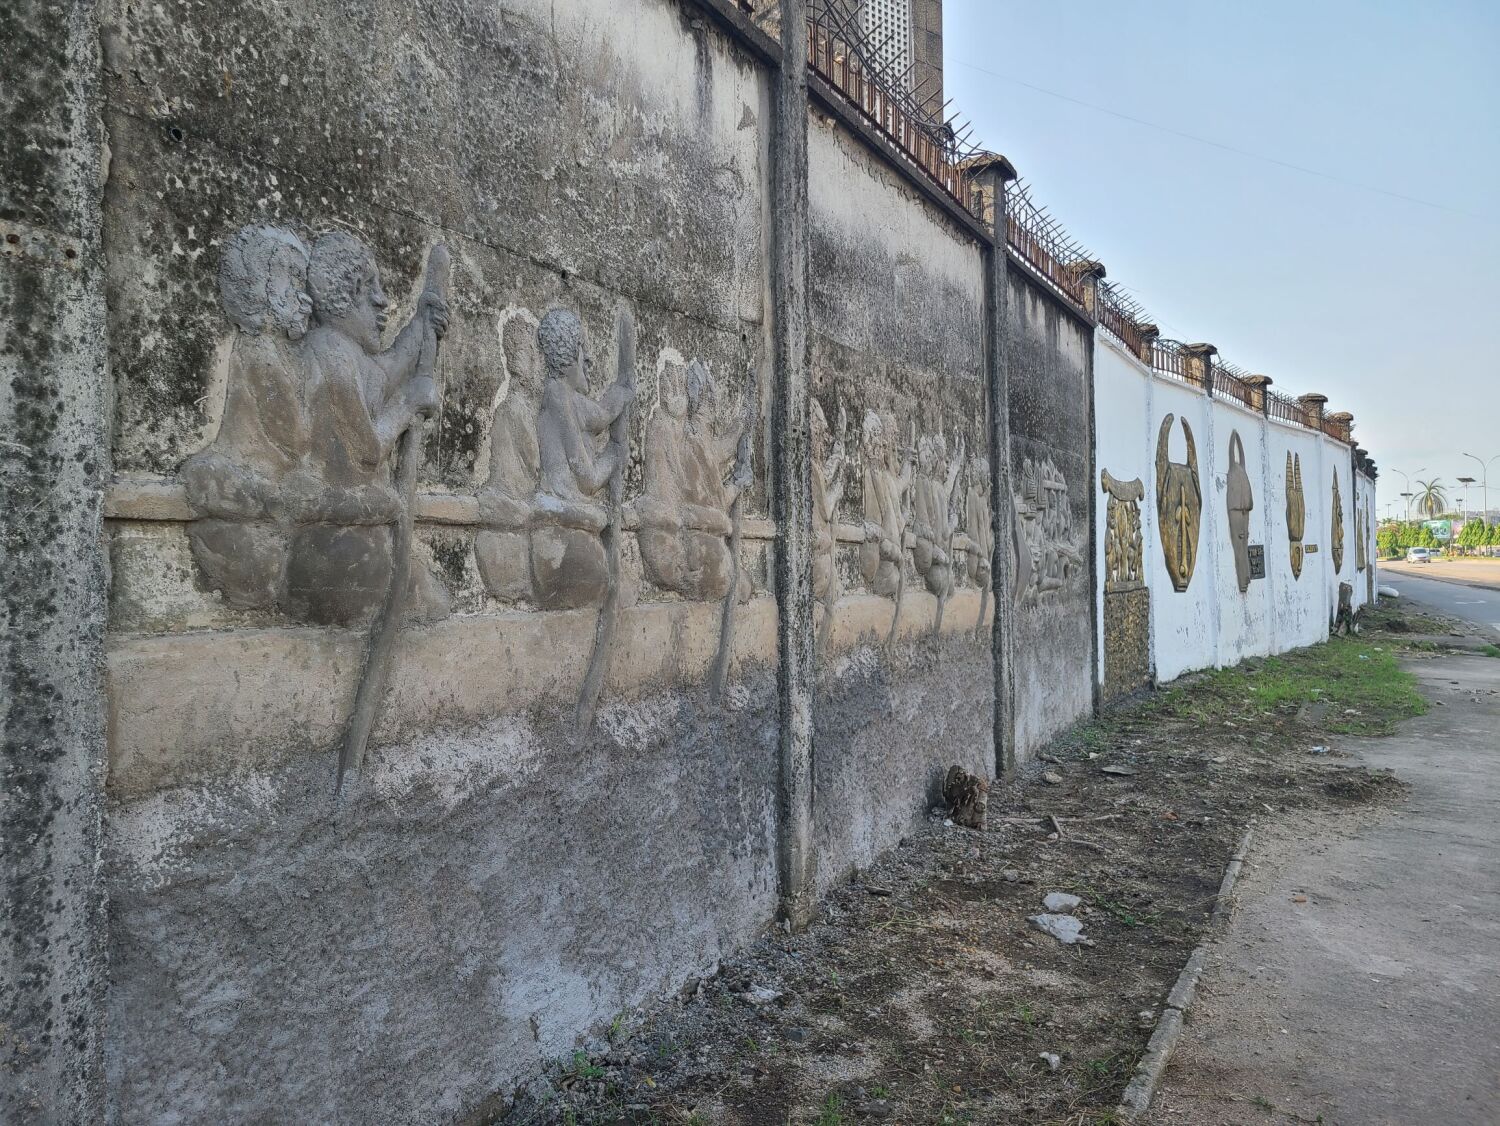 In Restauration befindende Stadtmauer, auf der die Geschichte Doualas dargestellt wird